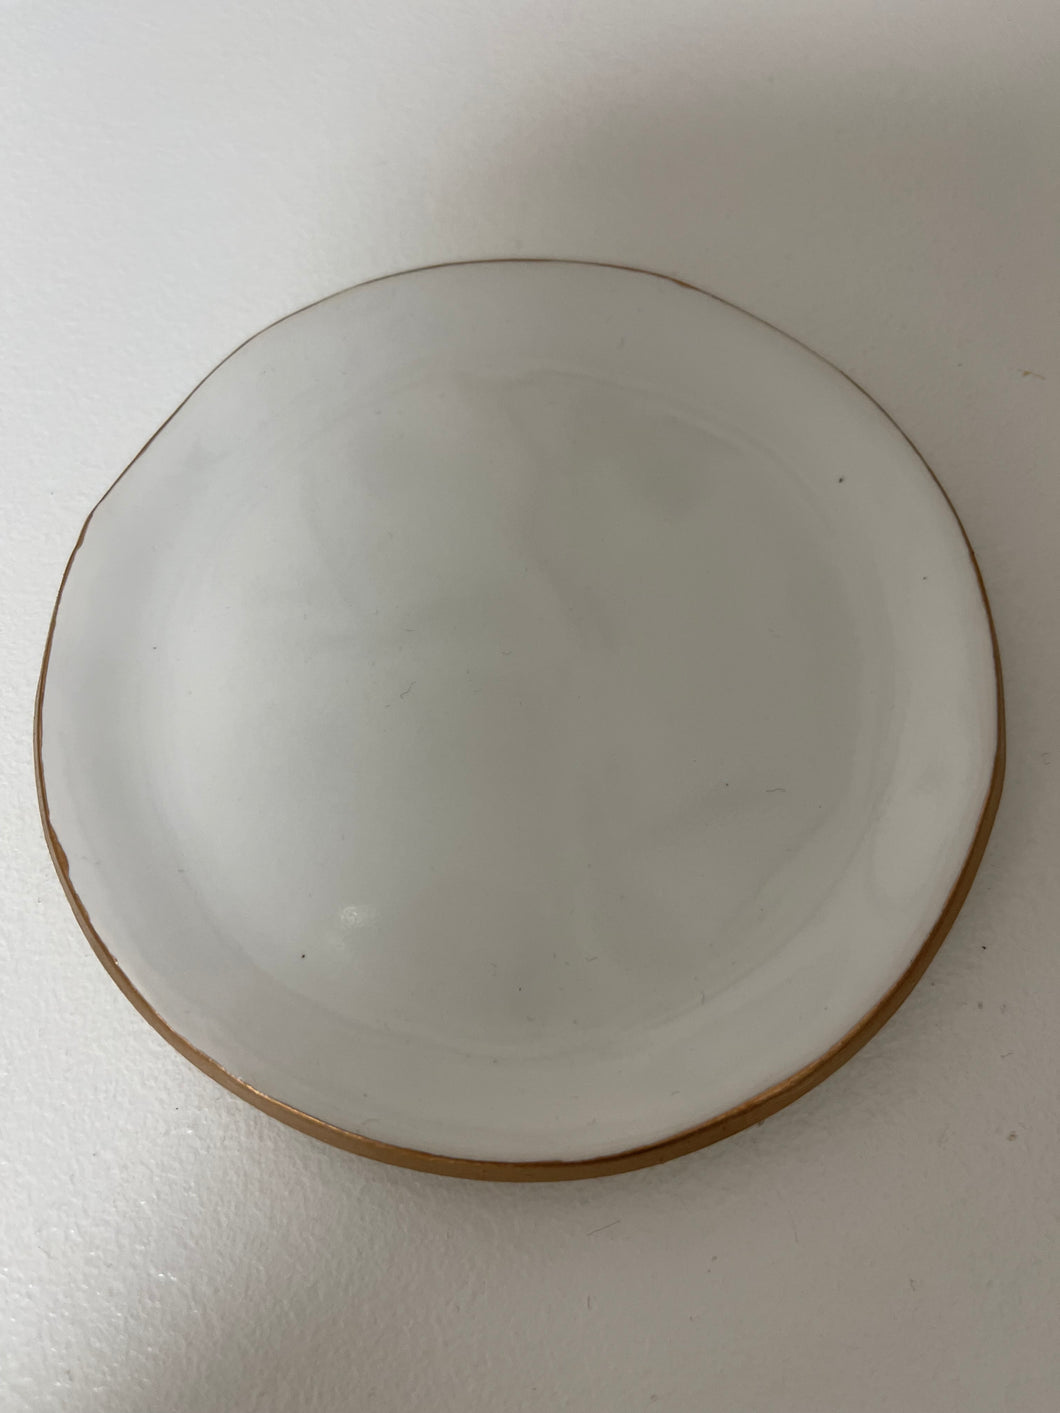 Ring Dish White w/ gold rim